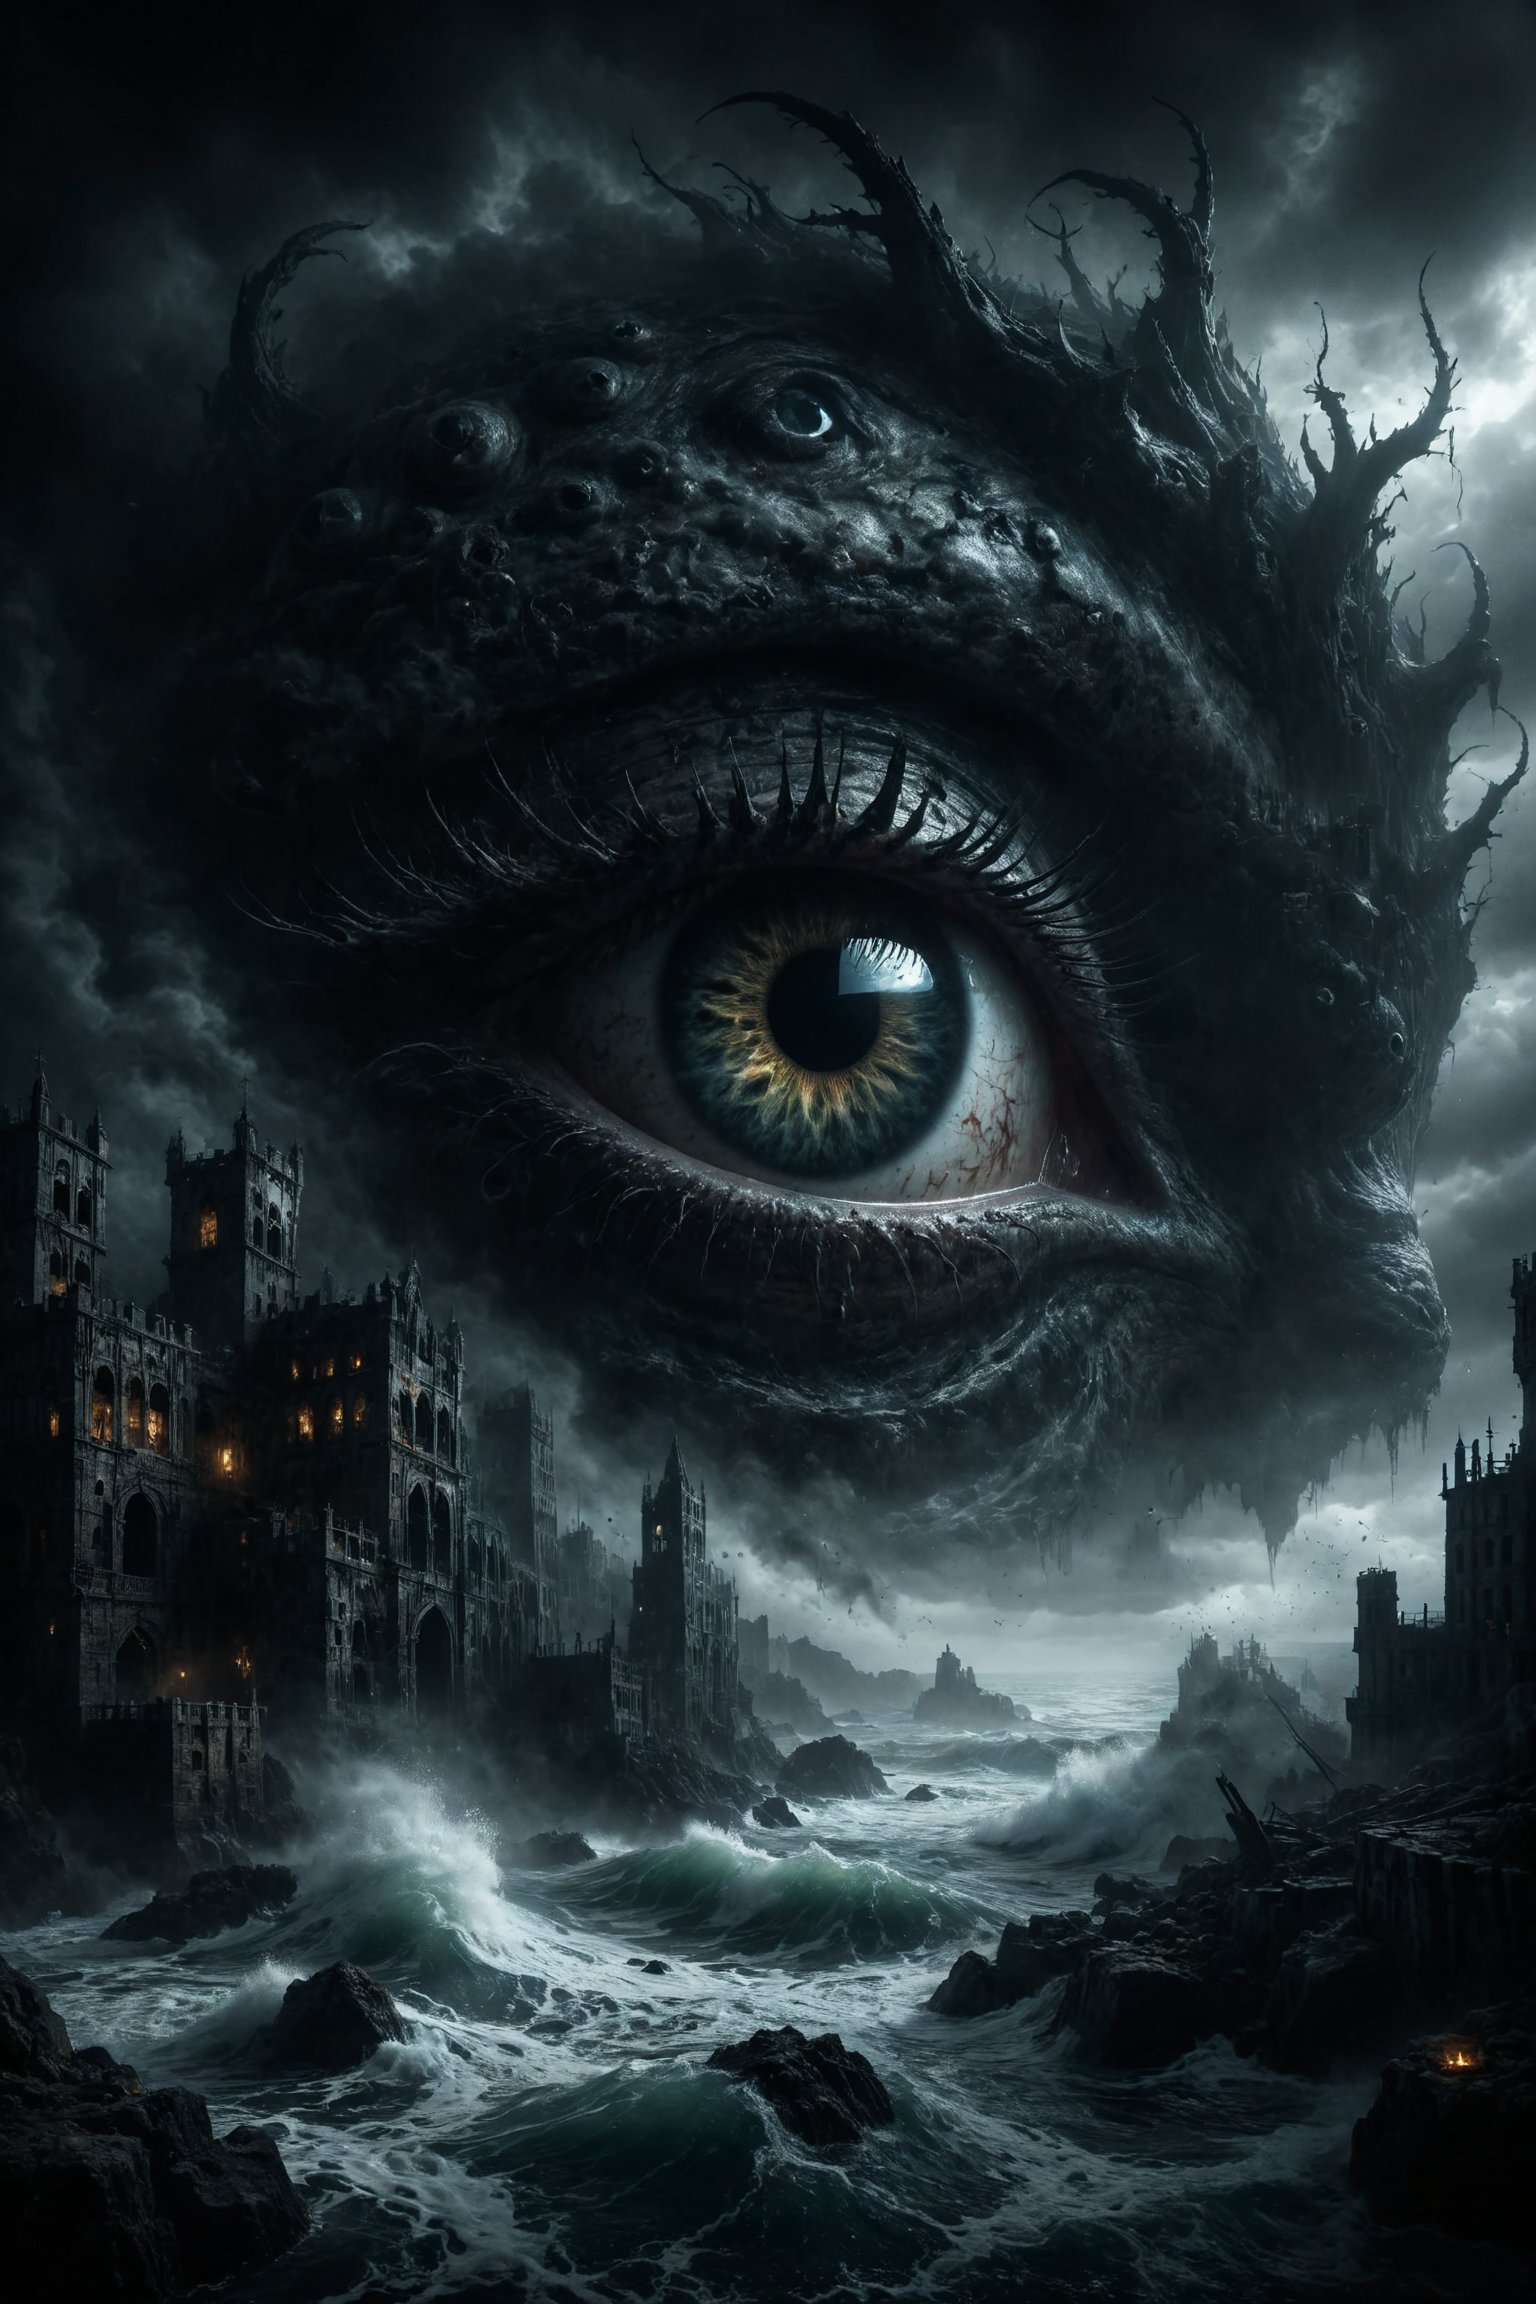 mitica y misteriosa escena gotica de Un leviatán marino con escamas negras y ojos que brillan en la oscuridad, emergiendo de un mar tempestuoso y agitado.